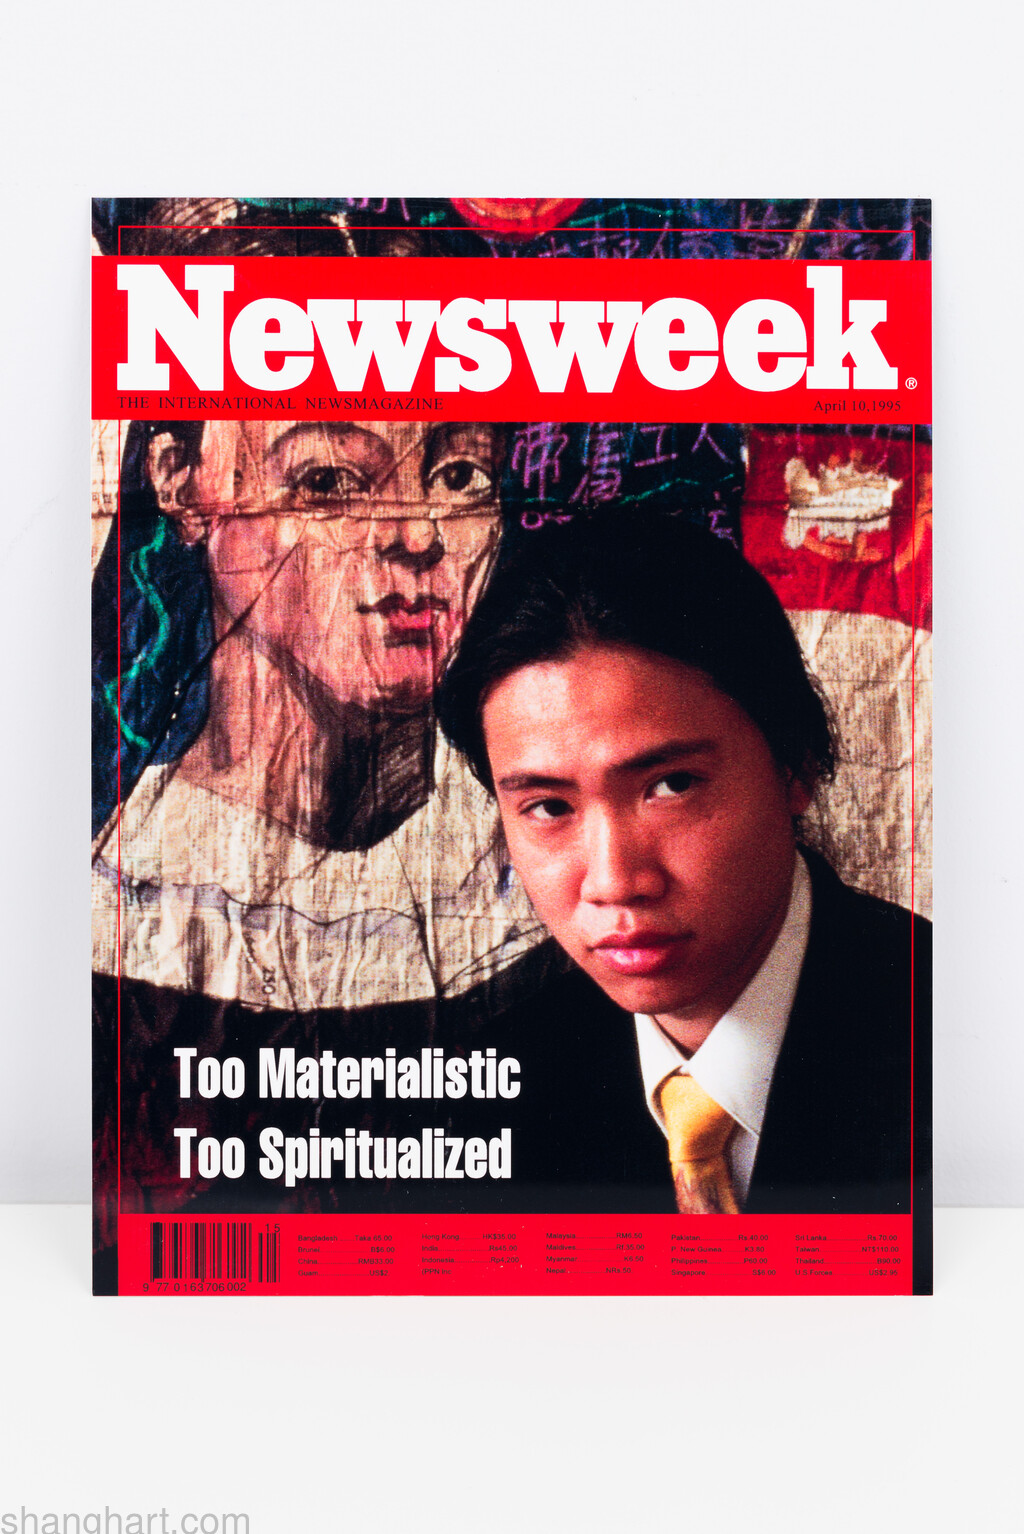 Newsweek, 26.9x20.5cm